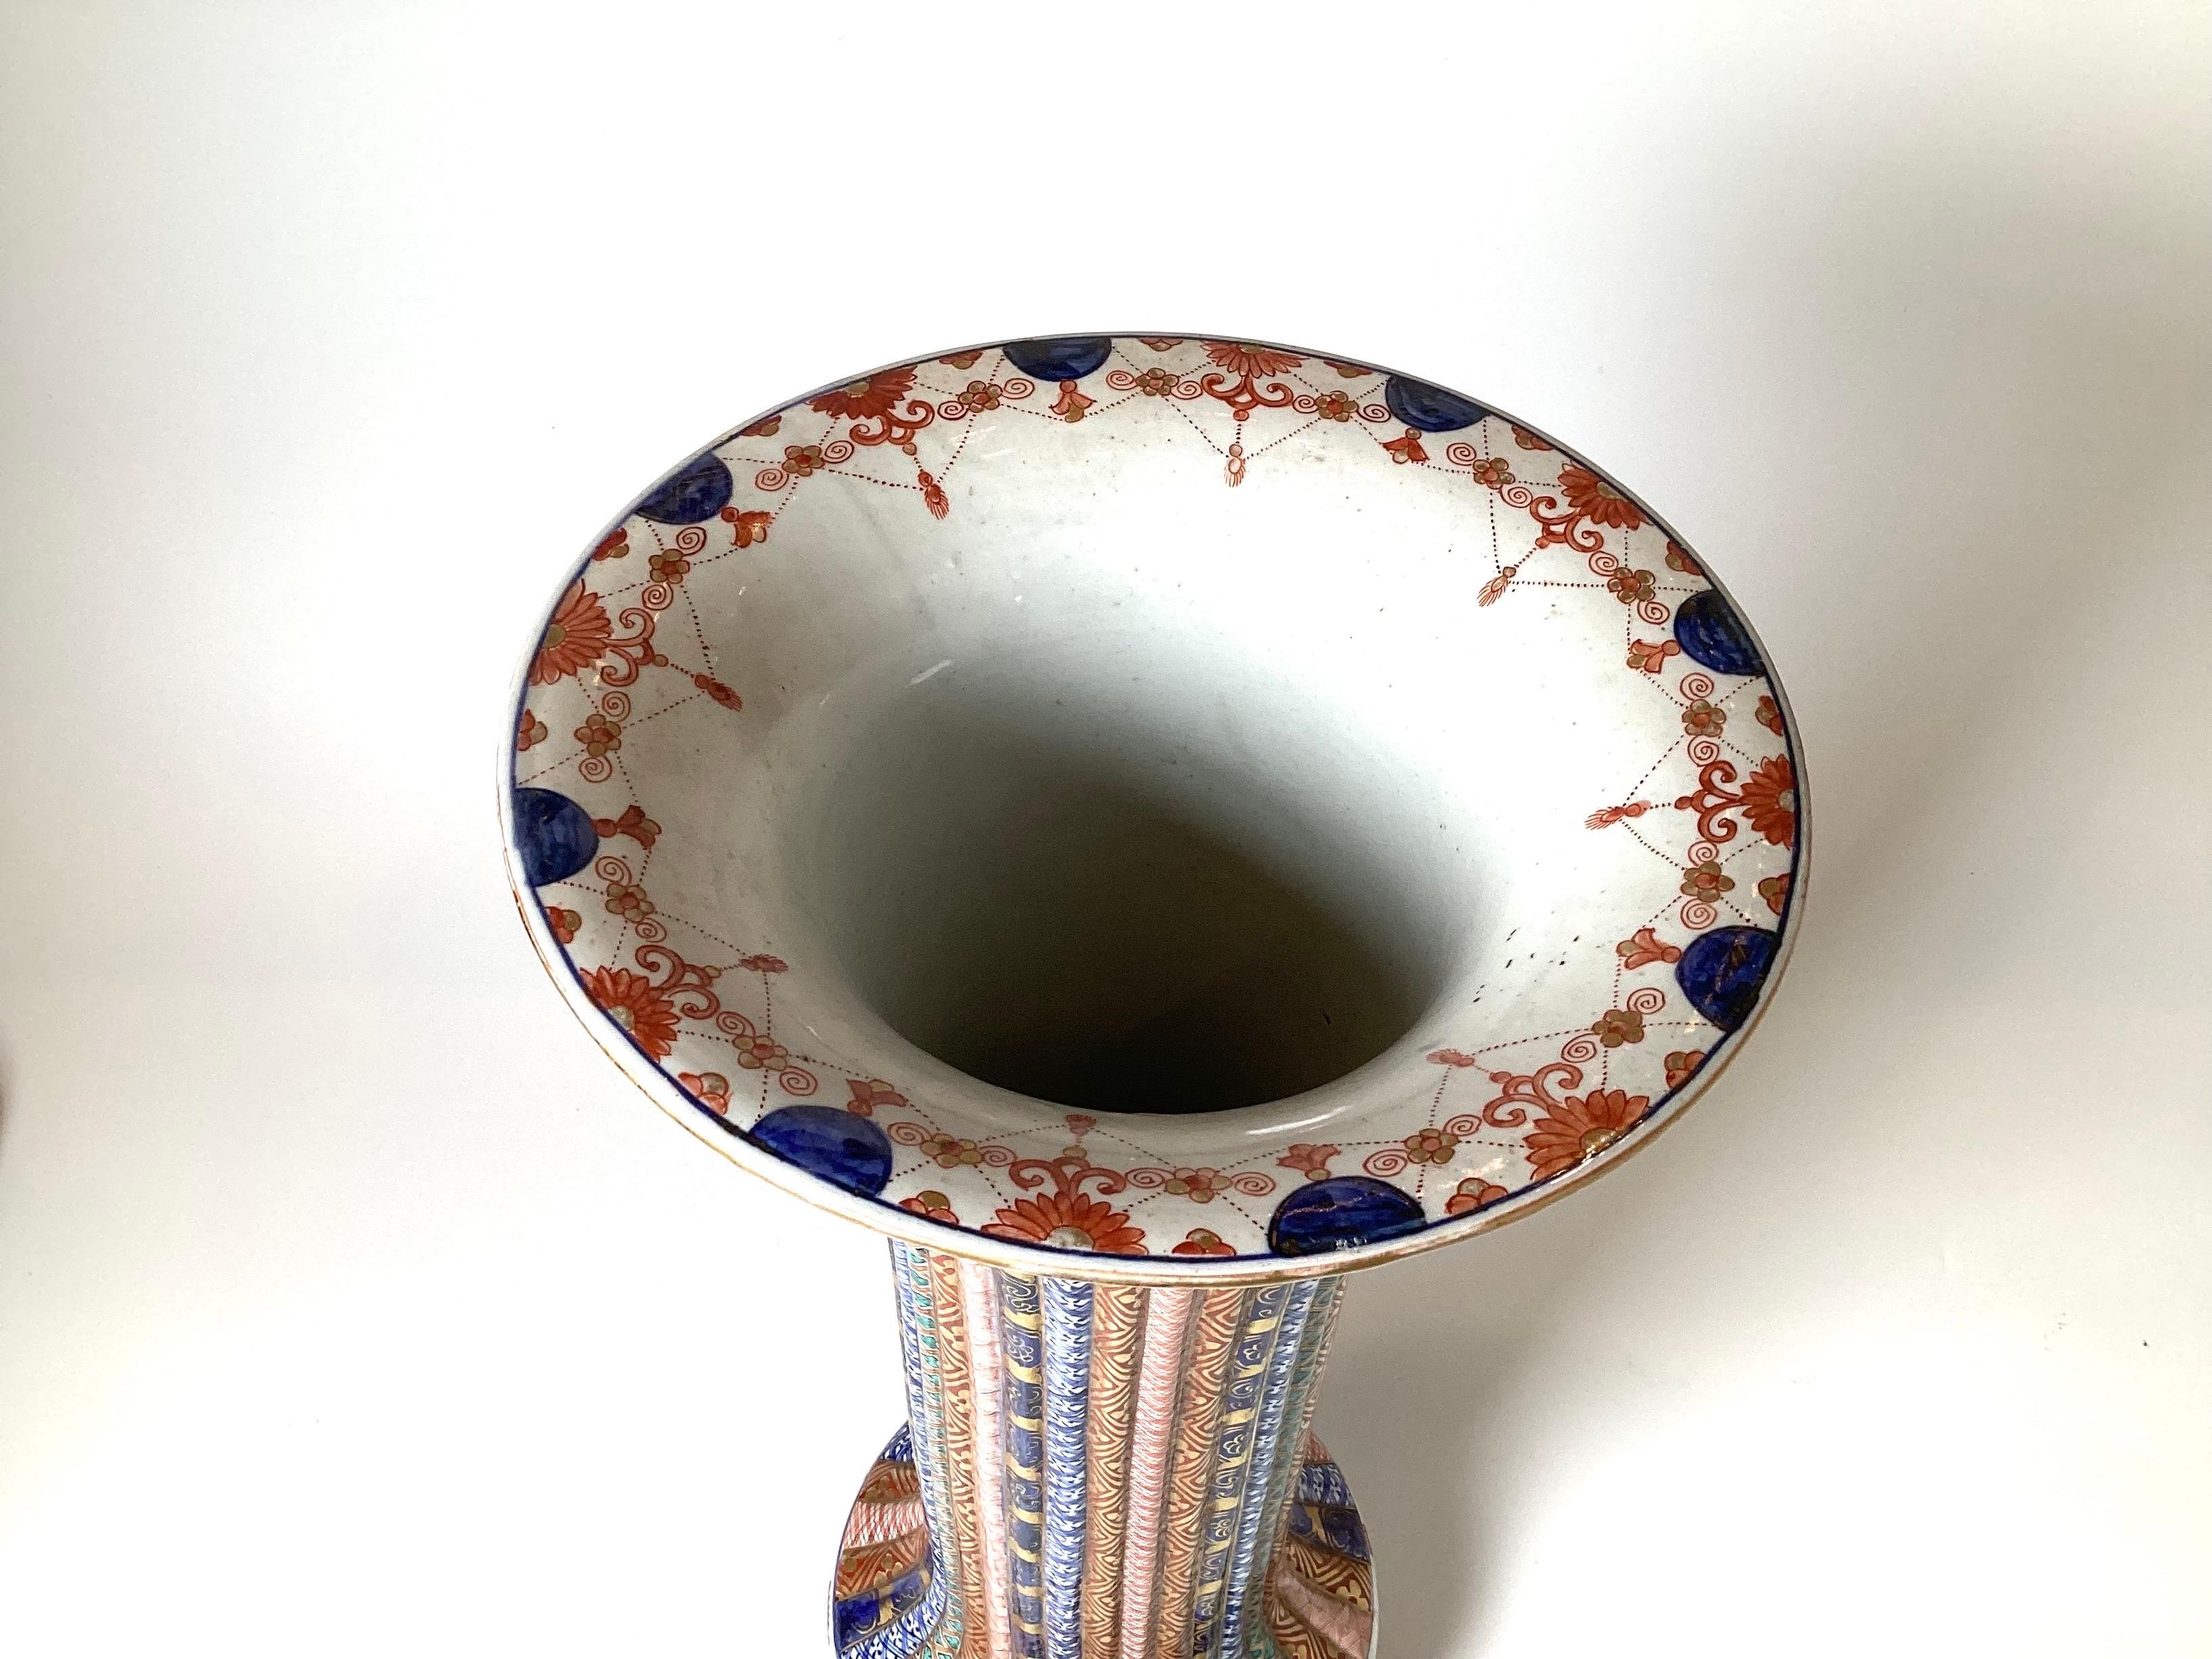 Eine bemerkenswerte handbemalte Trompetenvase aus japanischem Imari-Porzellan mit geripptem Korpus und reichem Dekor. Diese Vase ist sehr selten und einzigartig in ihrer Dekoration und der Qualität der Malerei des Künstlers. Maße: 21,5 Zoll hoch.